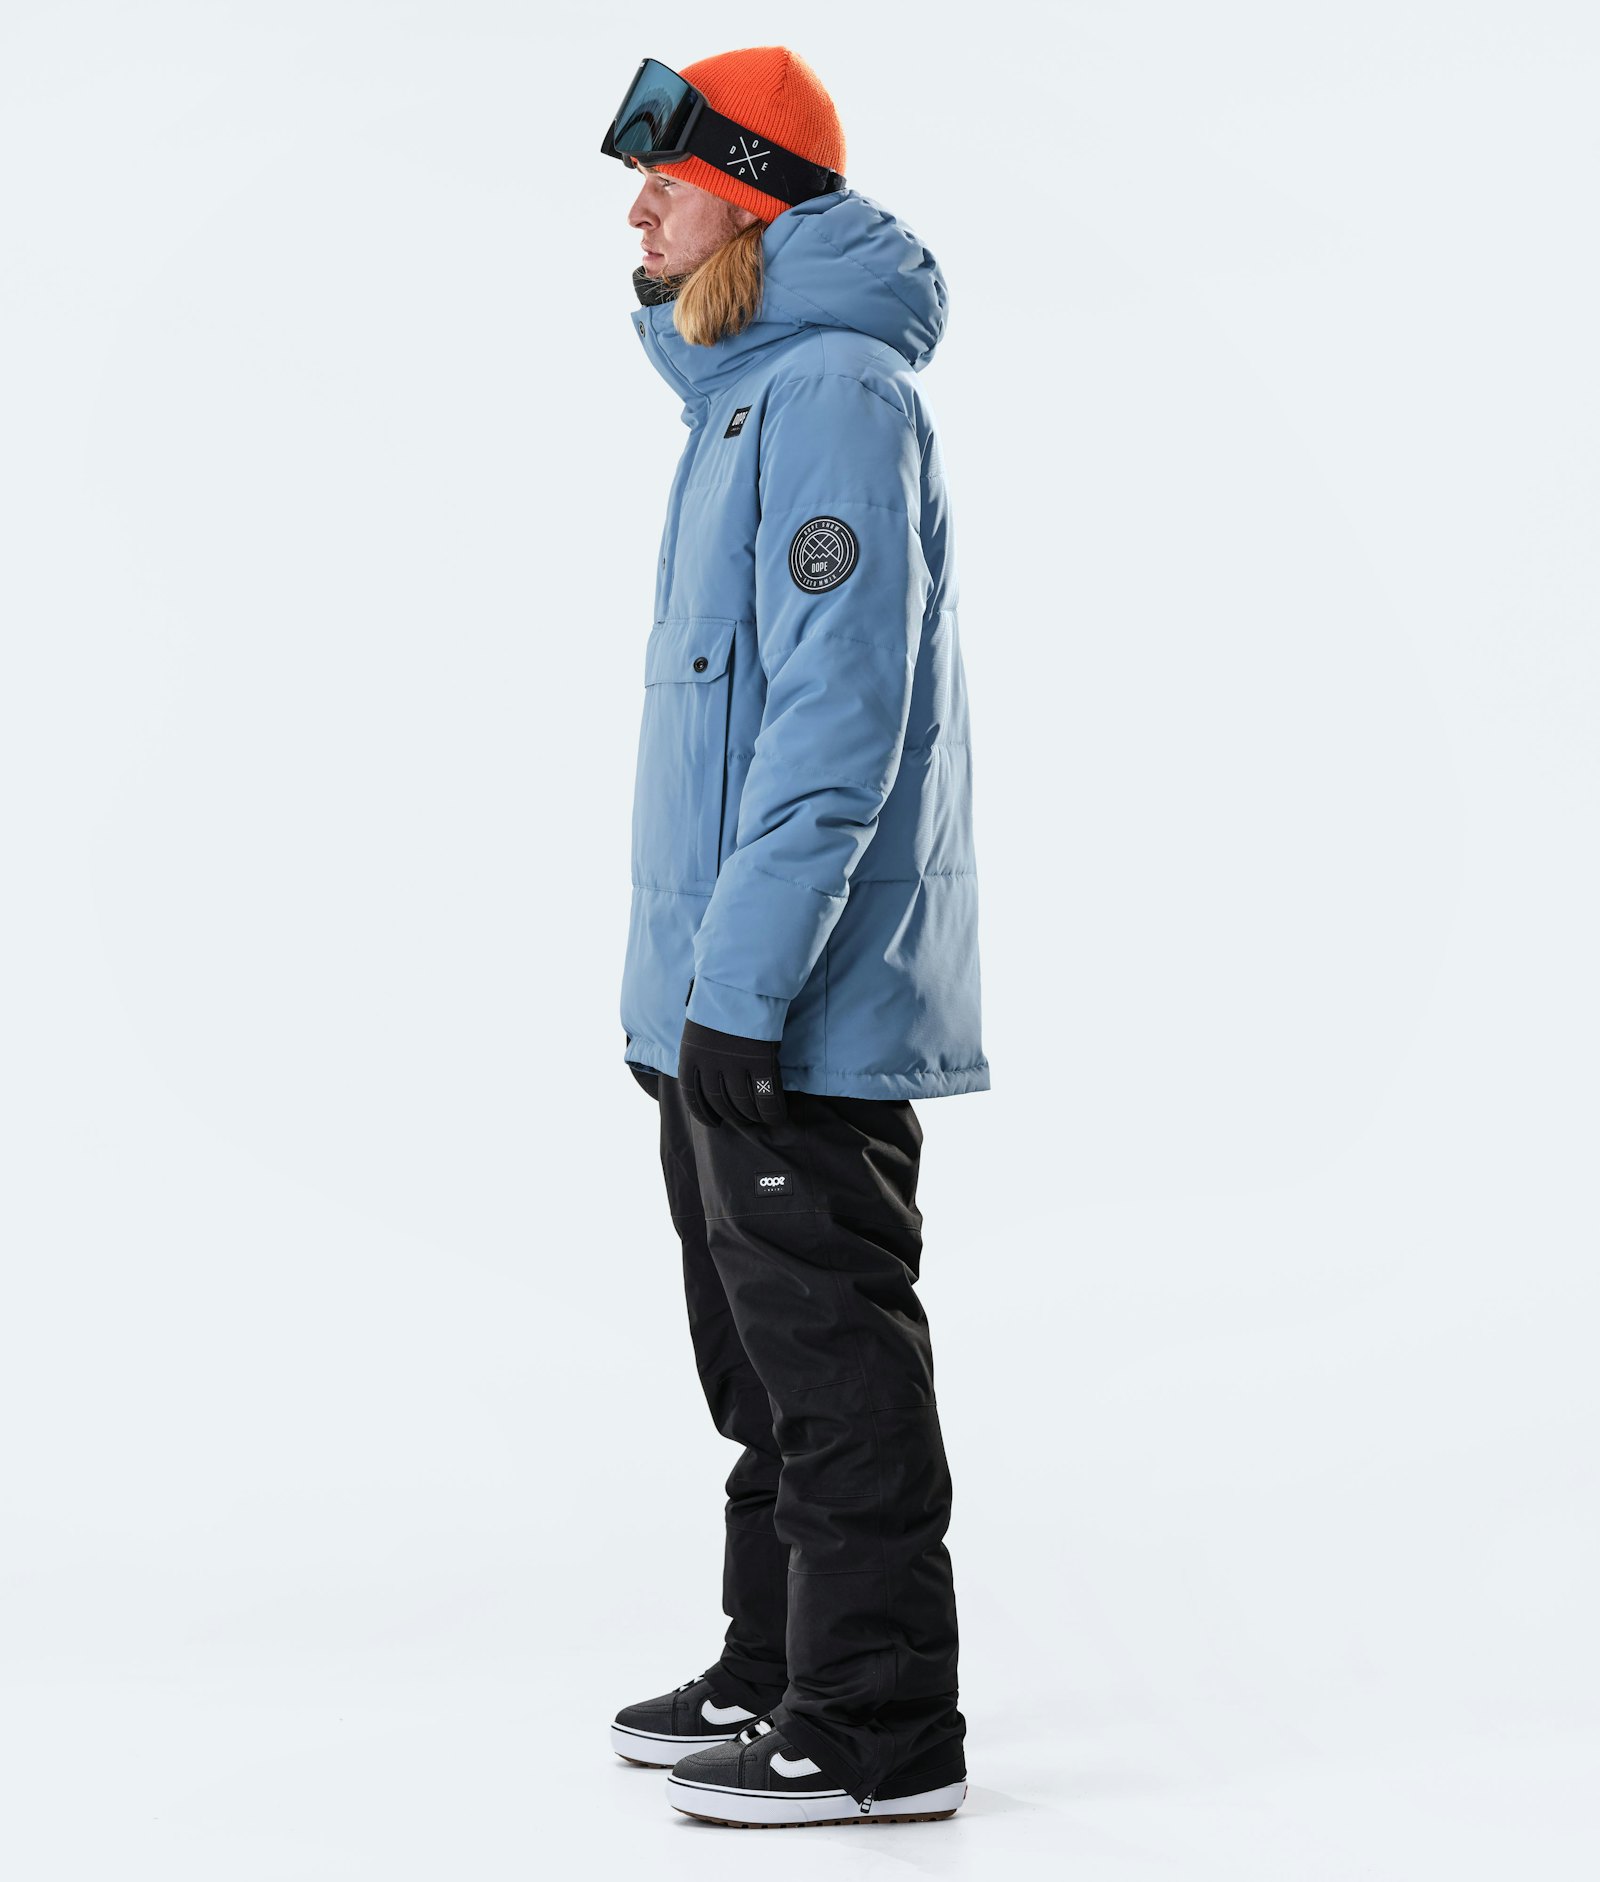 Puffer 2020 Snowboard Jacket Men Blue Steel